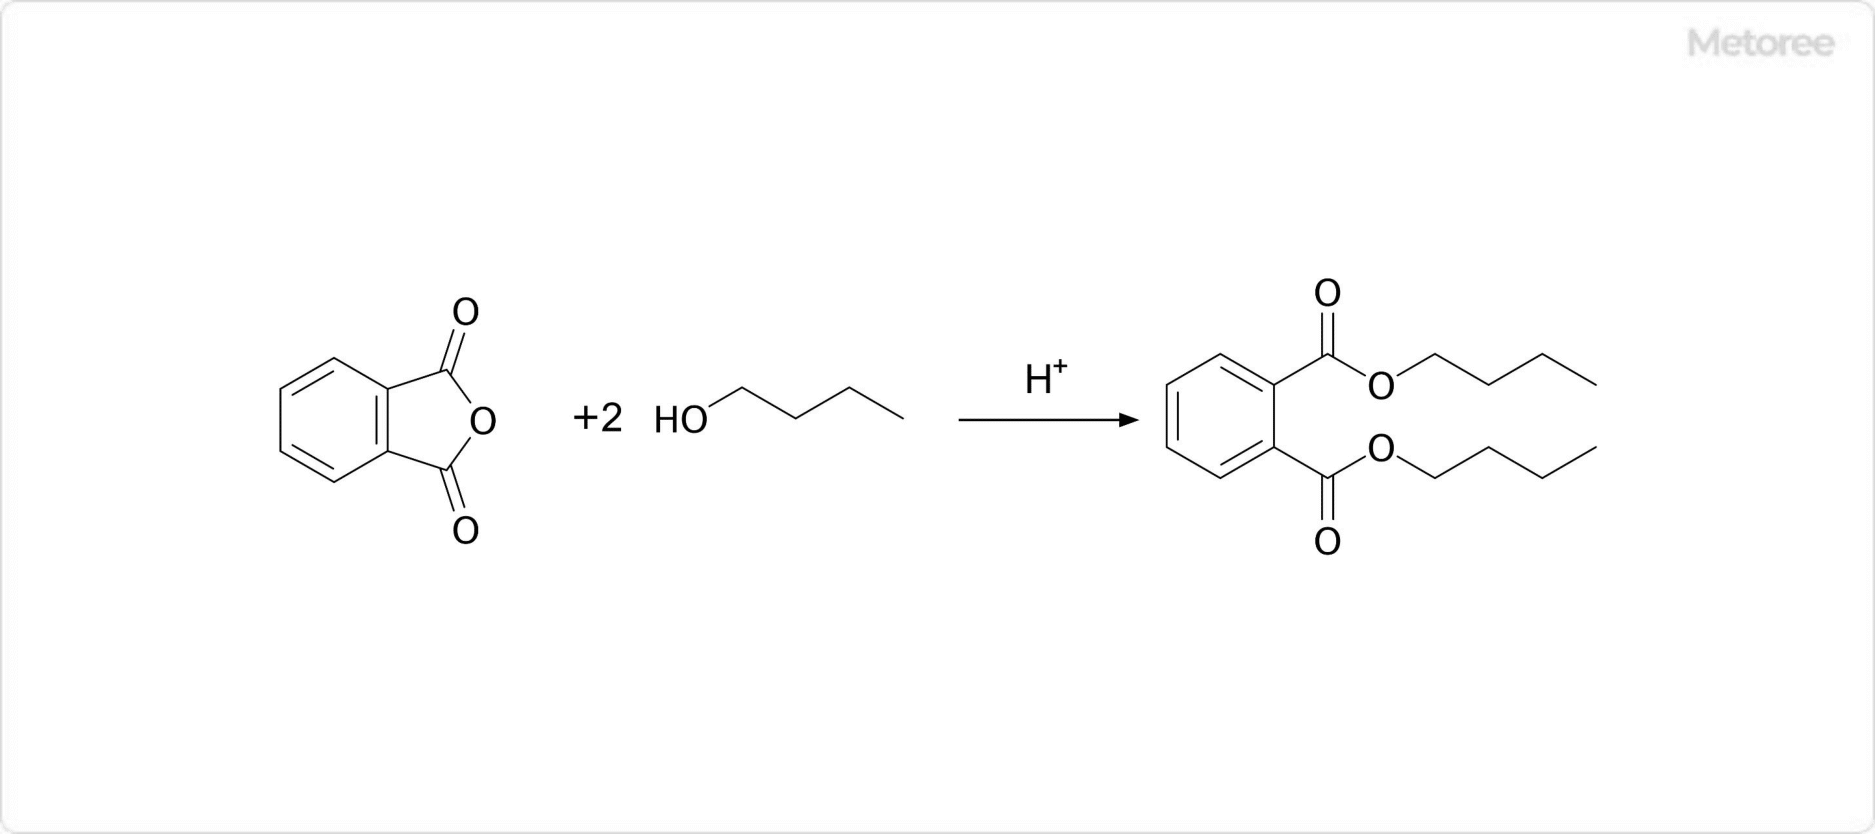 フタル酸ジブチルの合成